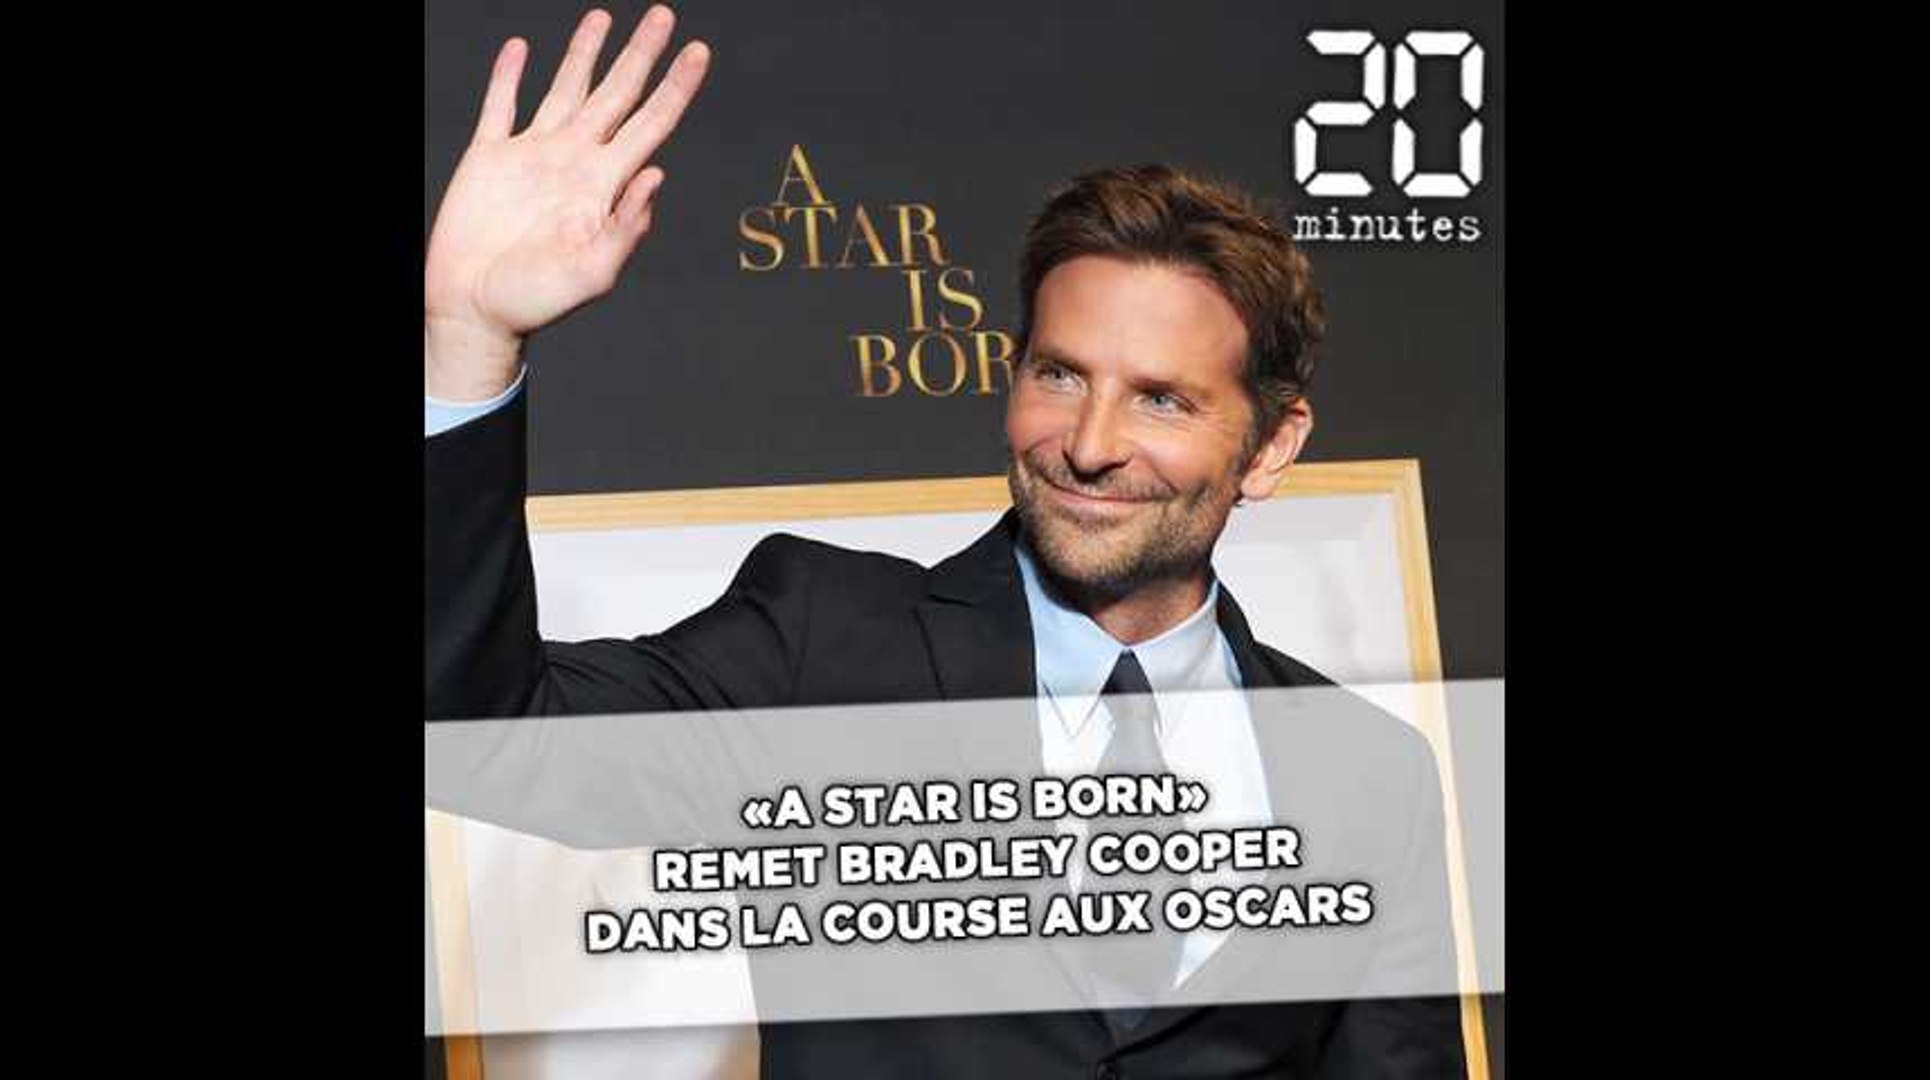 ⁣«A Star is Born» remet Bradley Cooper dans la course aux Oscars